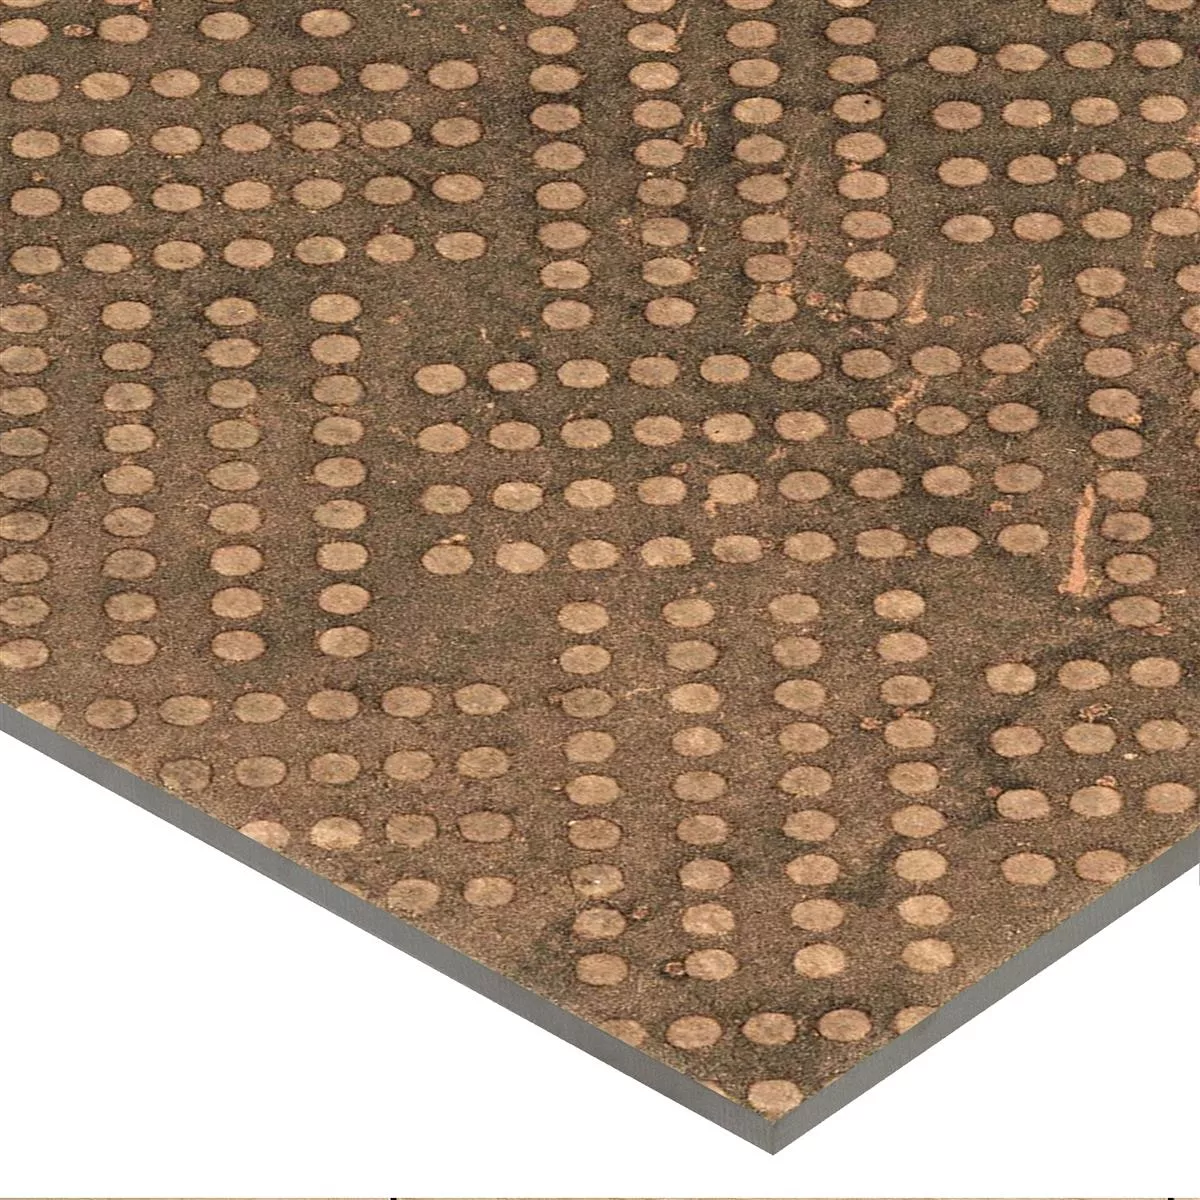 Πλακάκια Δαπέδου Chicago Μεταλλική Εμφάνιση Μπρούντζος R9 - 18,5x18,5cm - 1